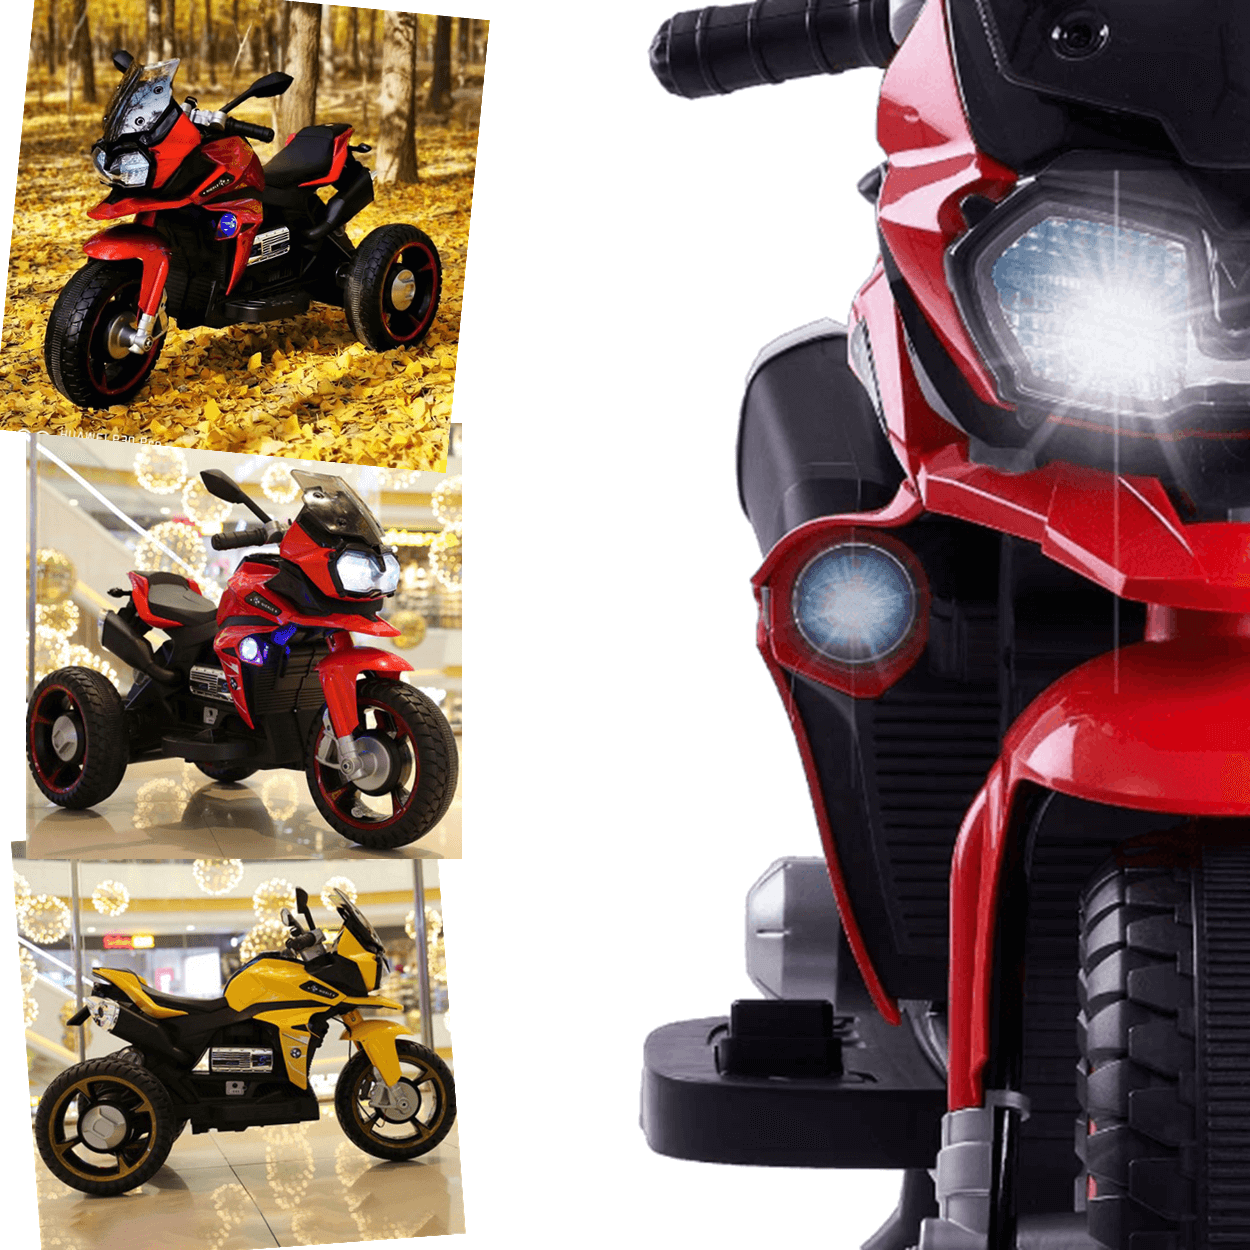 Moto Triciclo Eletrico Shiny Toys Nierle R1600 Gs 6v Vermelha - 4